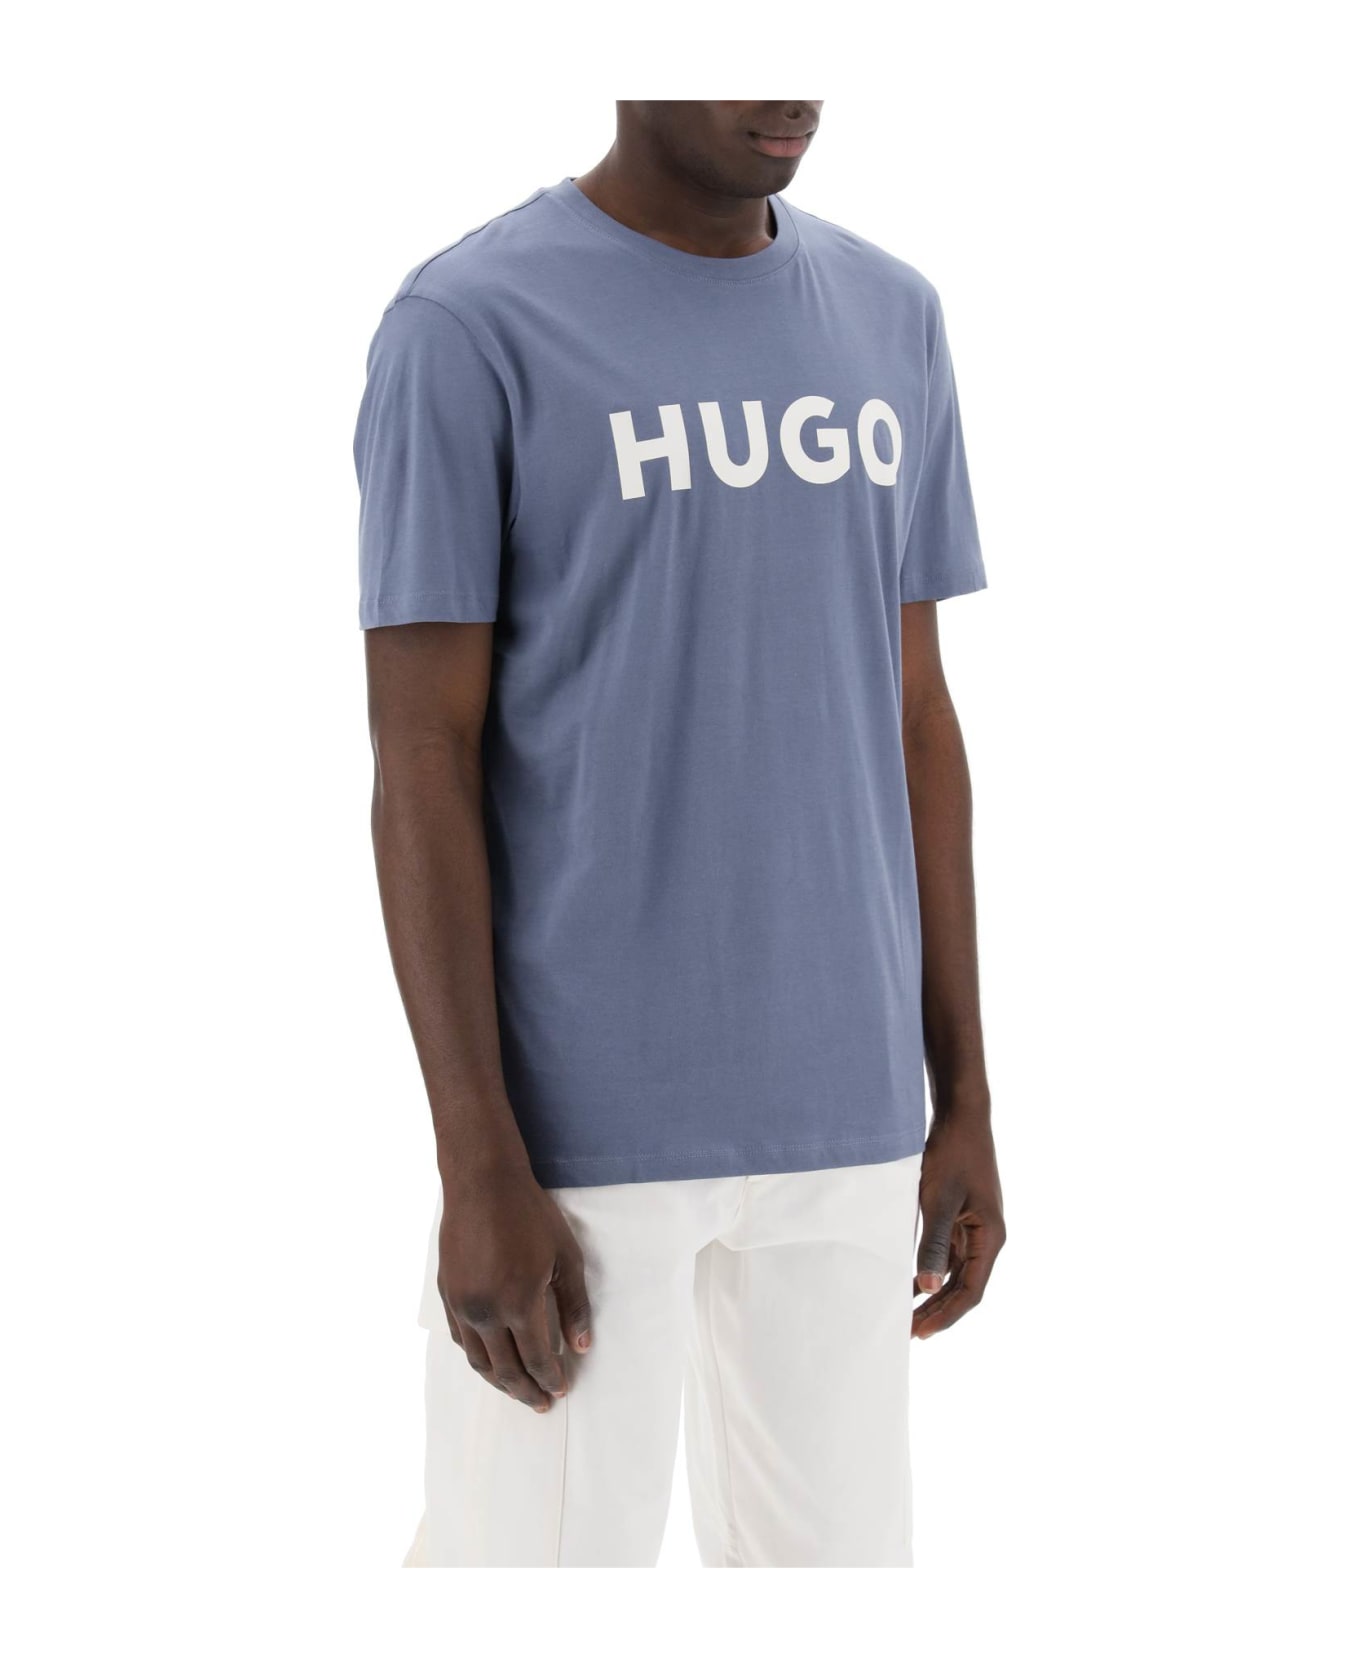 Hugo Boss Dulivio Logo T-shirt - OPEN BLUE (Light blue)